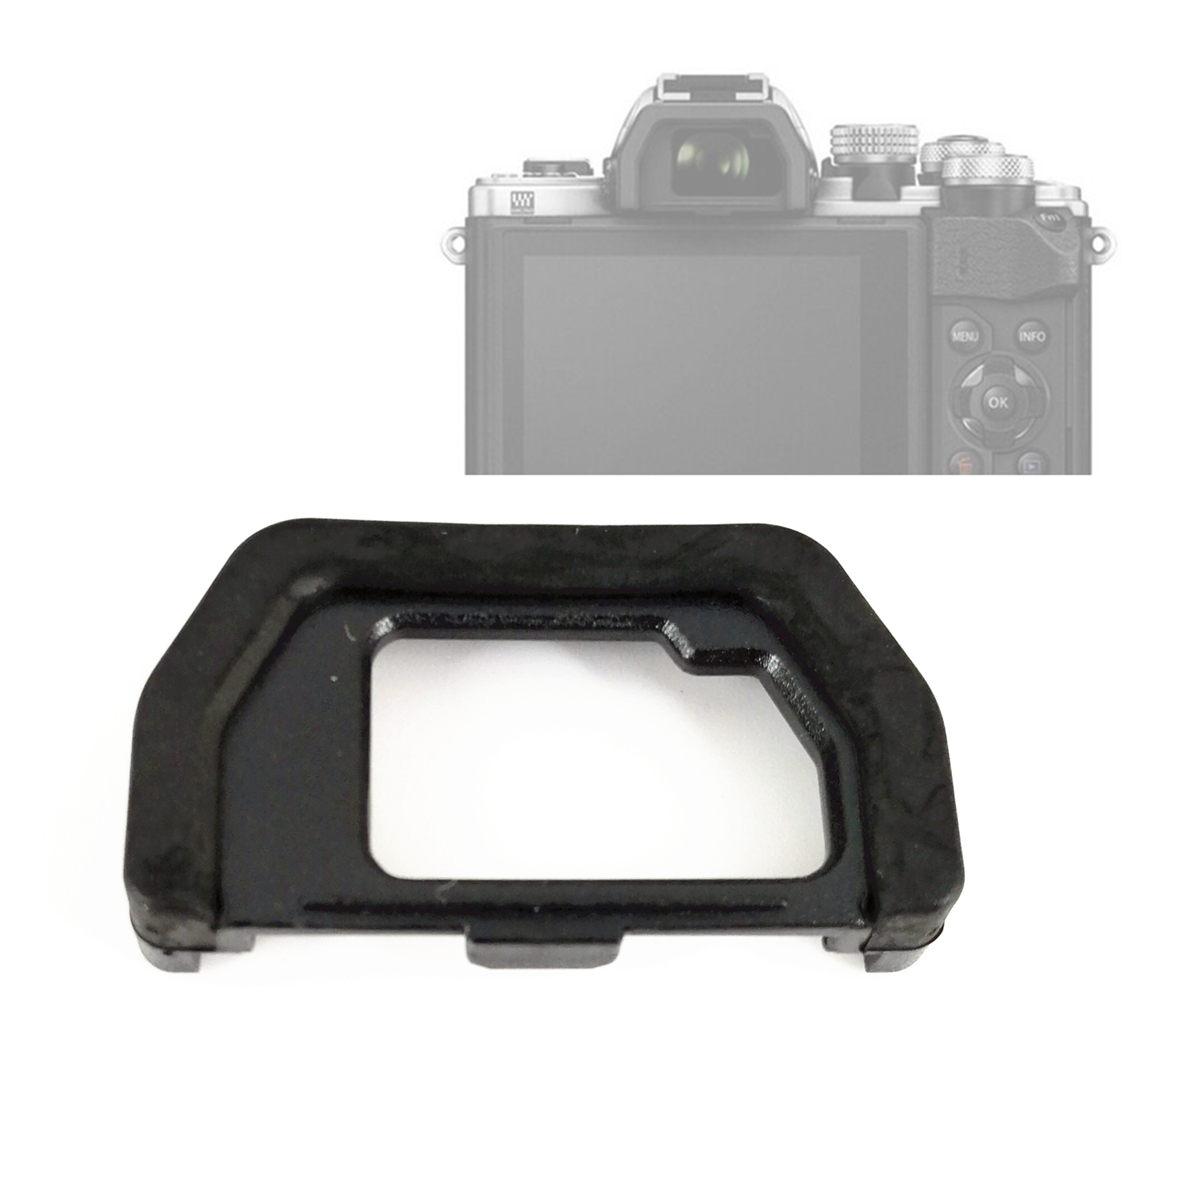 Viewfinder Eyepiece Eyecup Magnifier for Olympus EP-15 OM-D E-M10 EM5 MarkII 